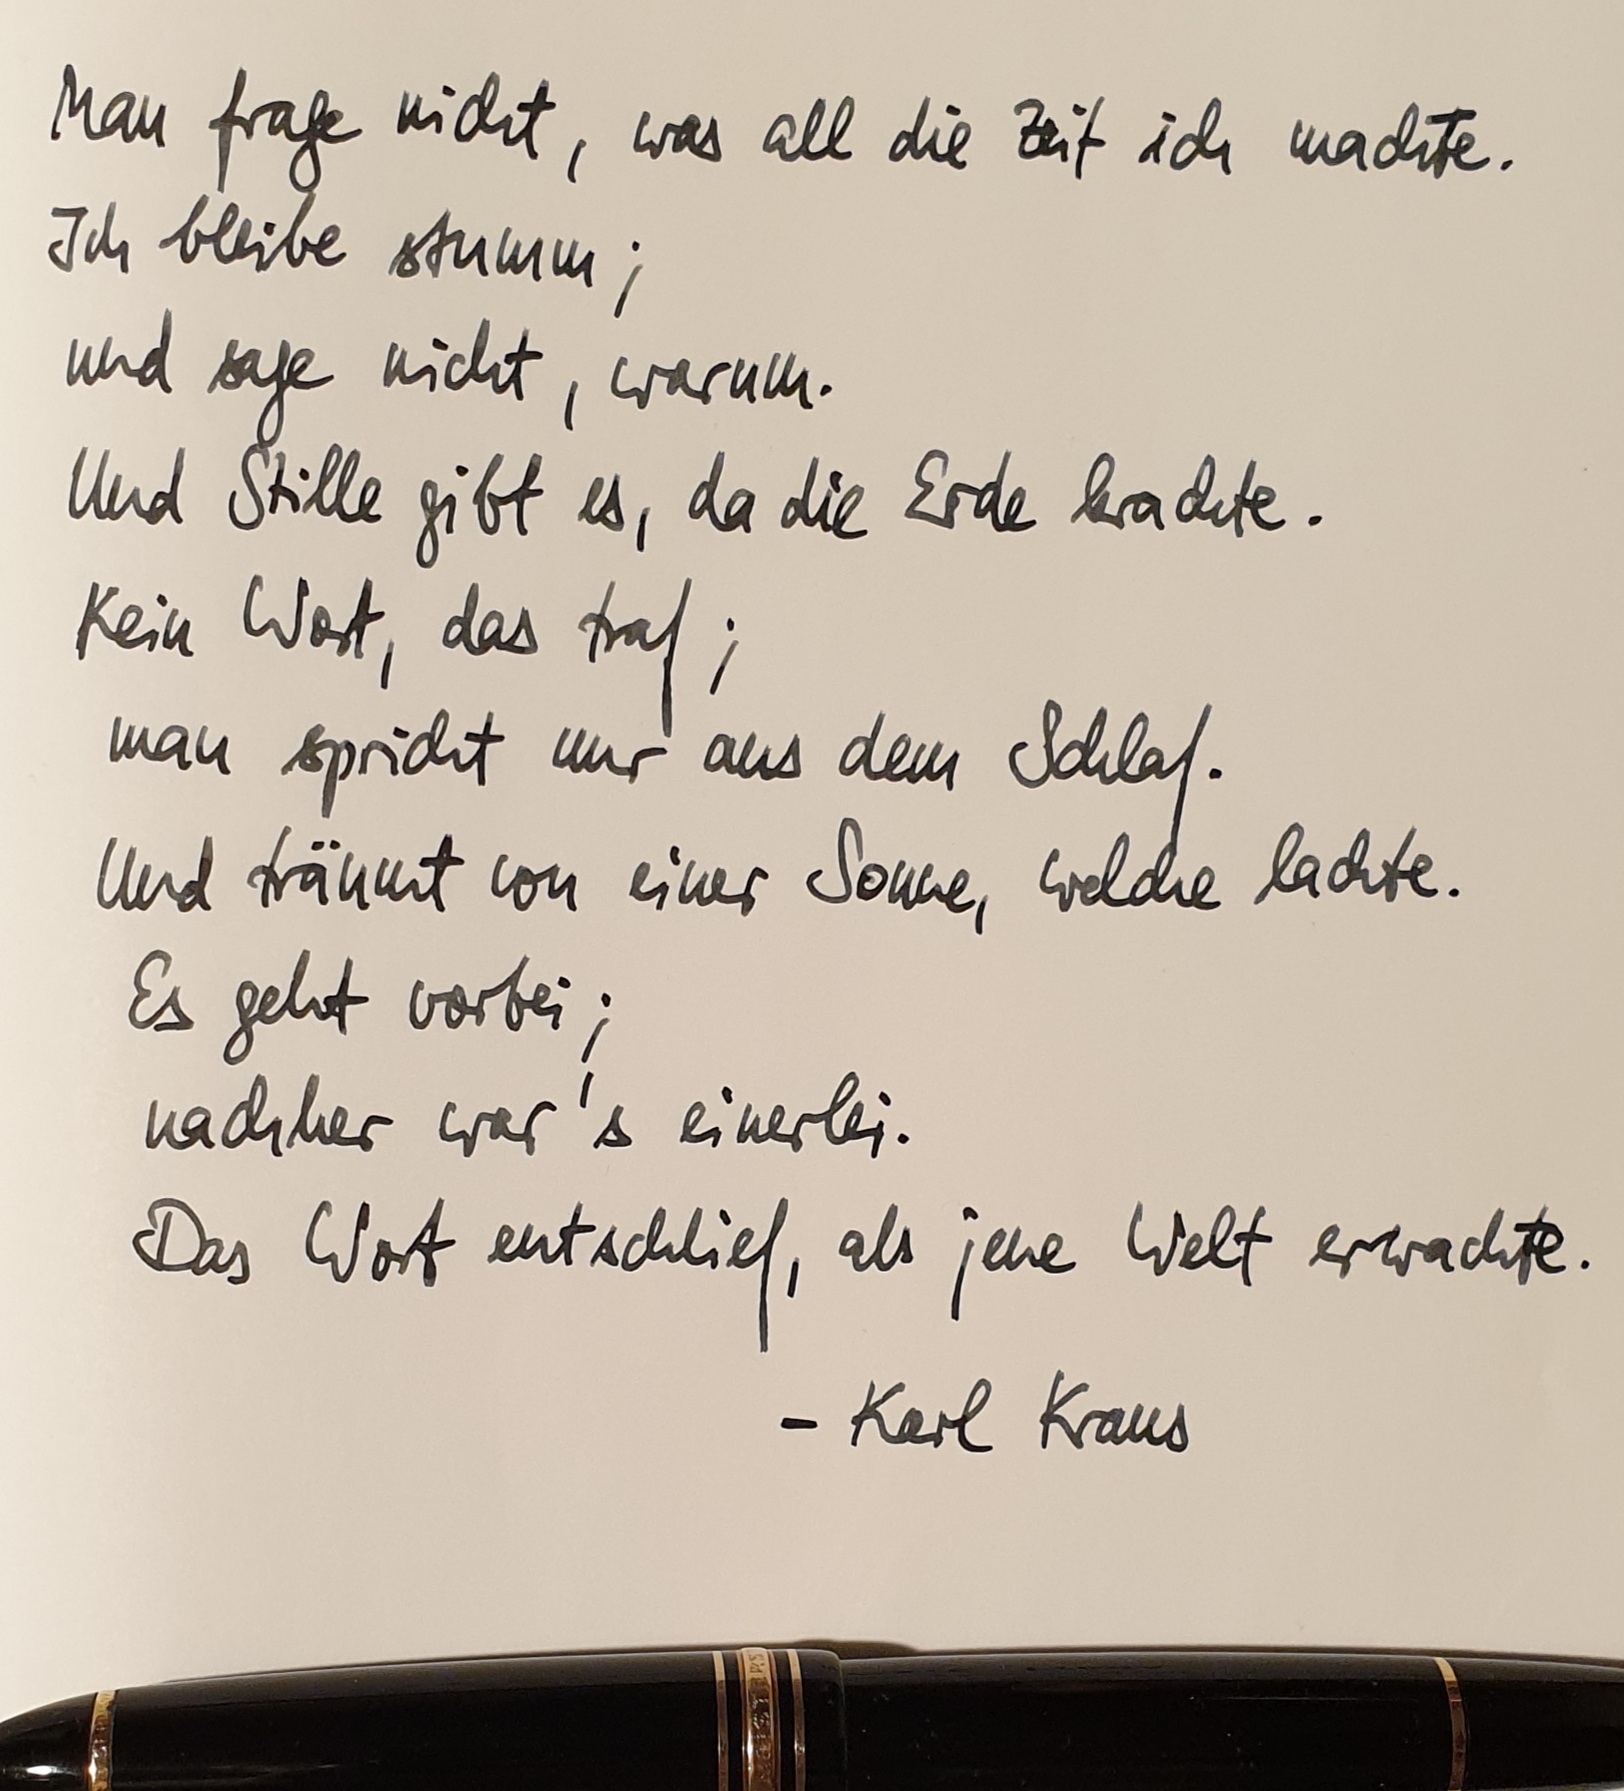 Man frage nicht (1933, Karl Kraus)